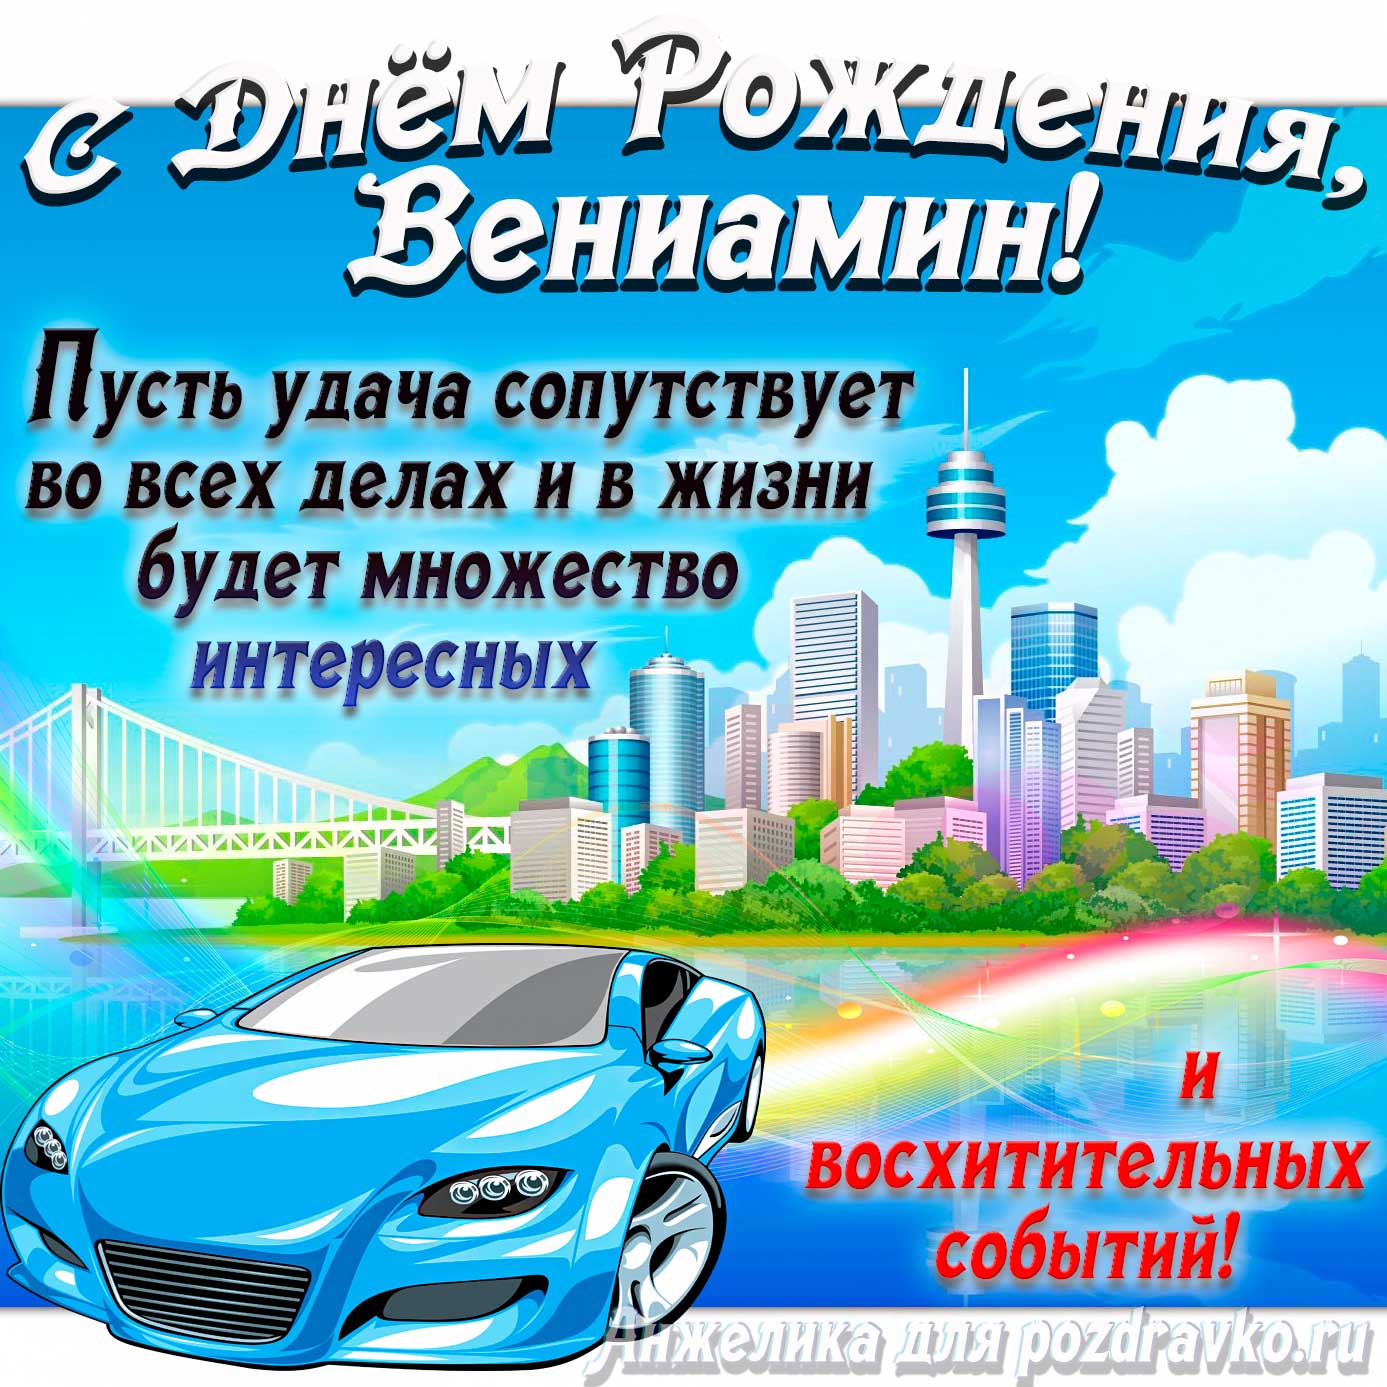 Открытка - с Днём Рождения Вениамин с голубой машиной и пожеланием. Скачать бесплатно или отправить картинку.